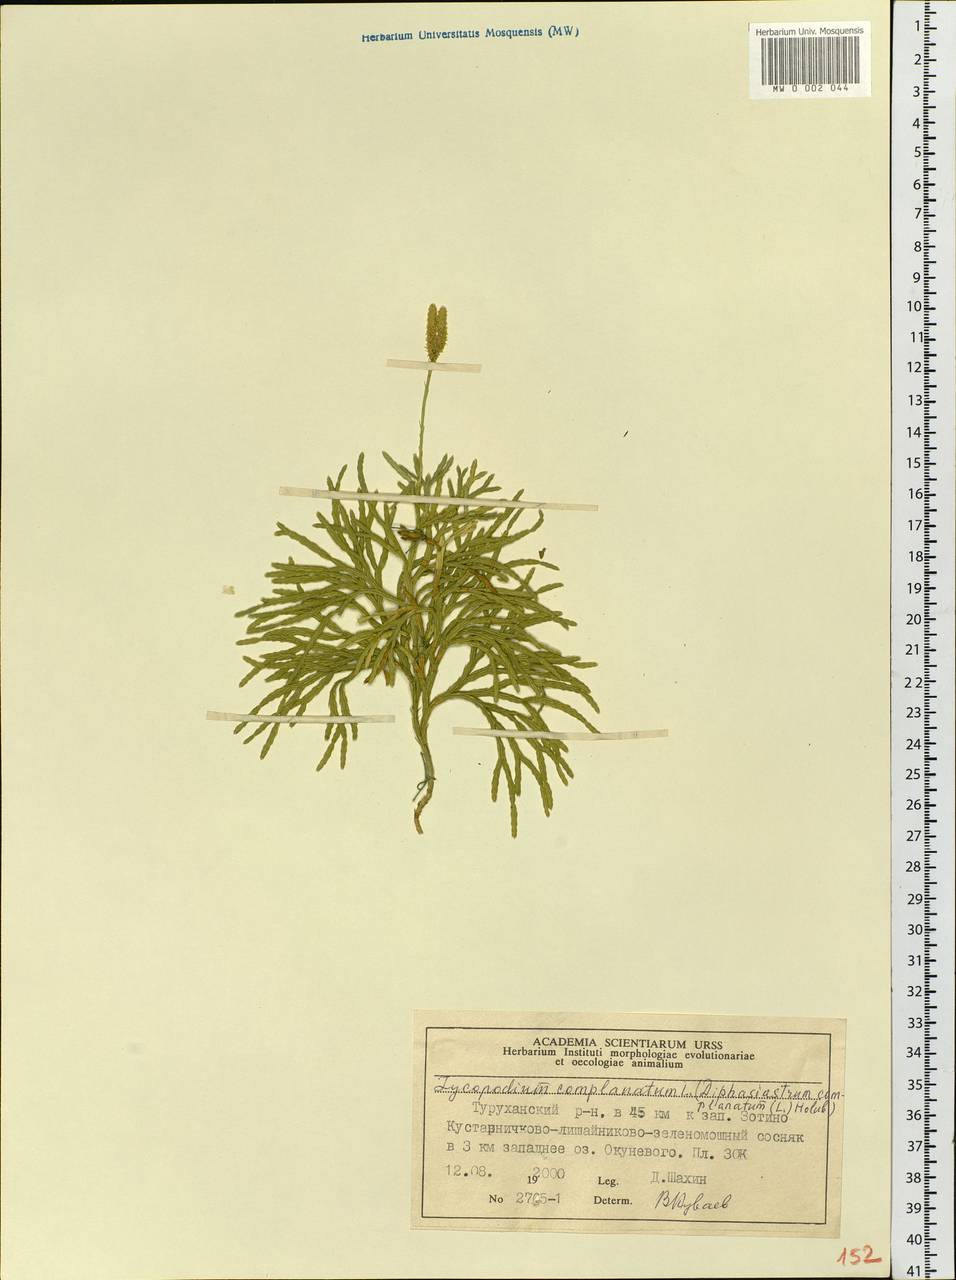 Diphasiastrum complanatum (L.) Holub, Siberia, Central Siberia (S3) (Russia)